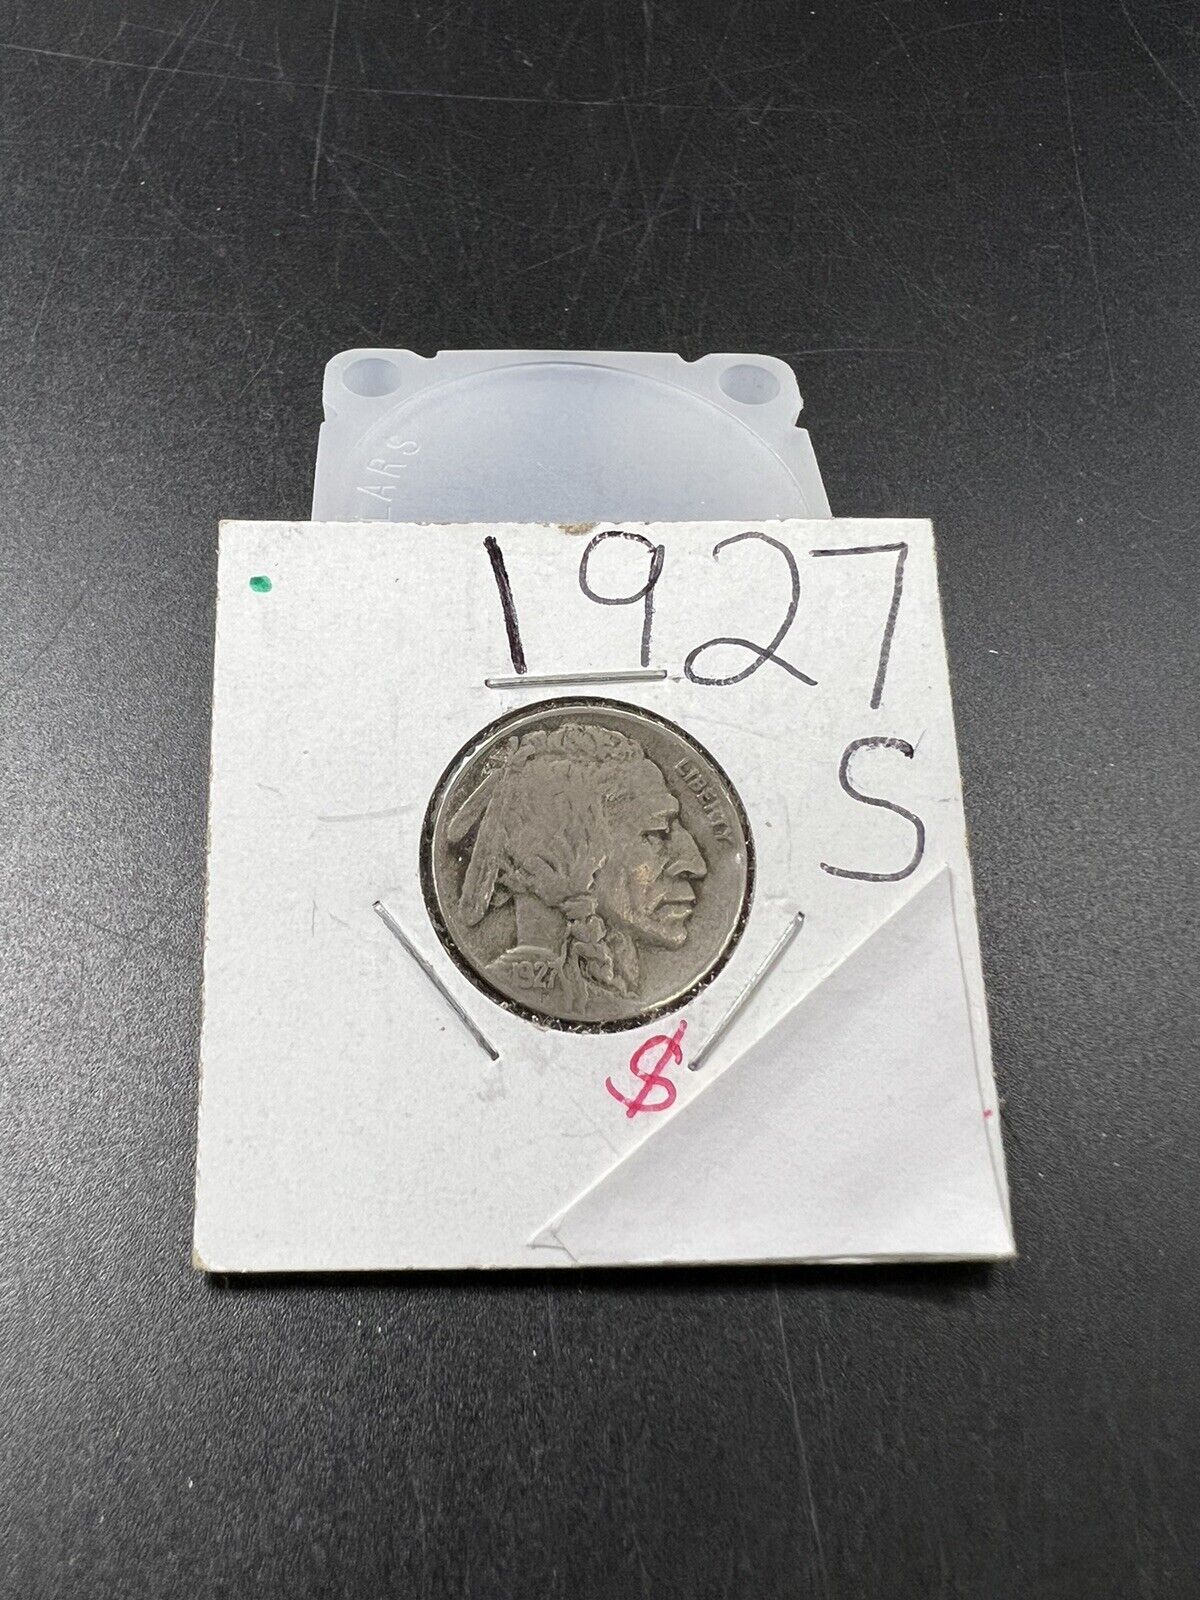 1927 S 5c Buffalo Indian Head Nickel Coin Choice VG Very Good / Fine